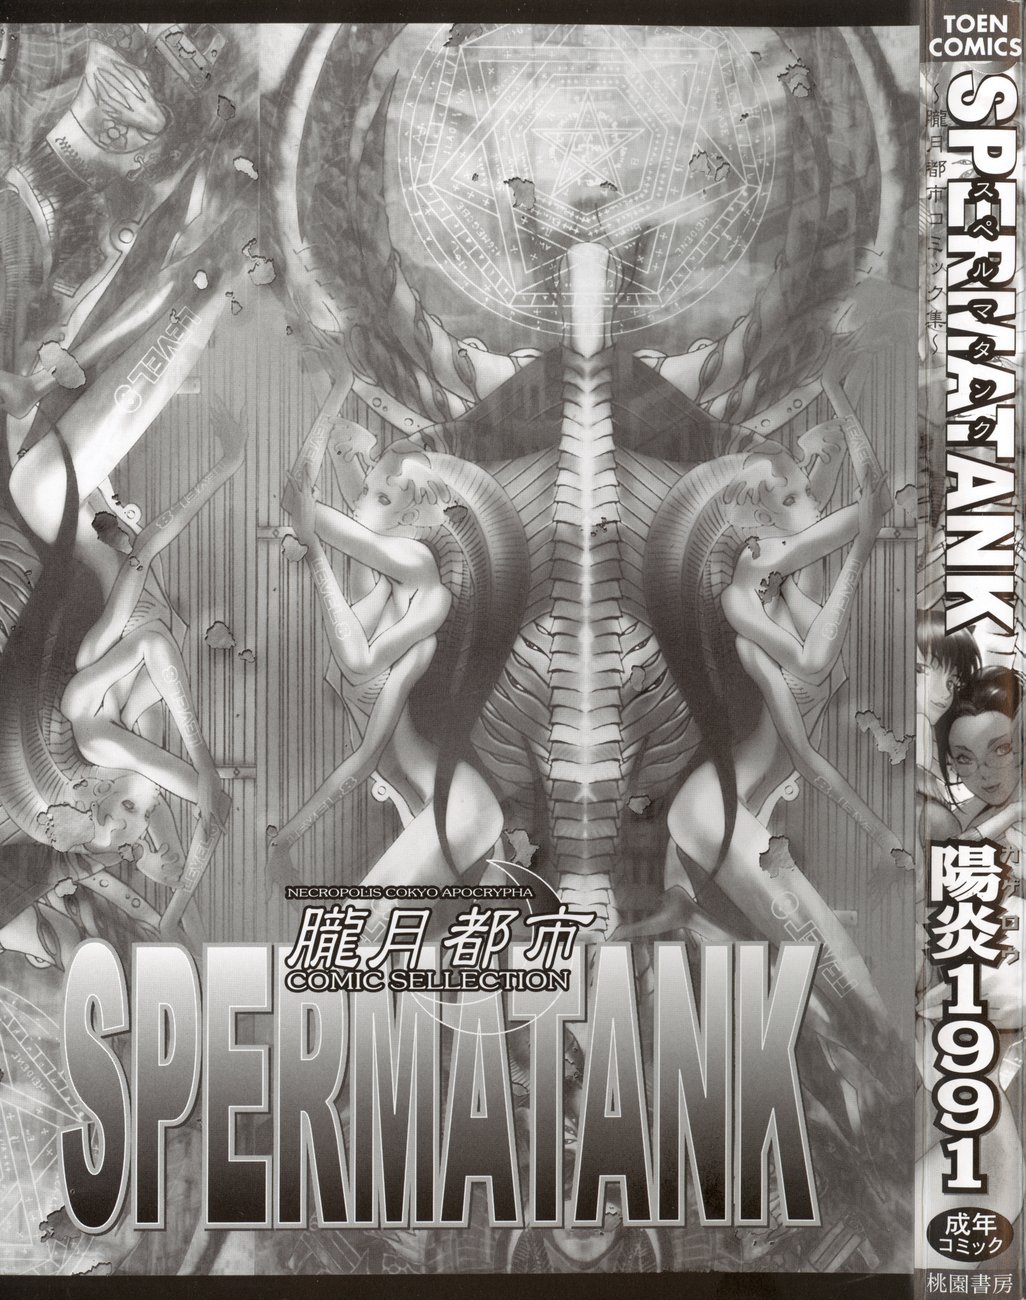 [Kagerou 1991] Spermatank ~Oborozuki Toshi Comic Shuu~ - Necropolis Cokyo Apocrypha page 2 full